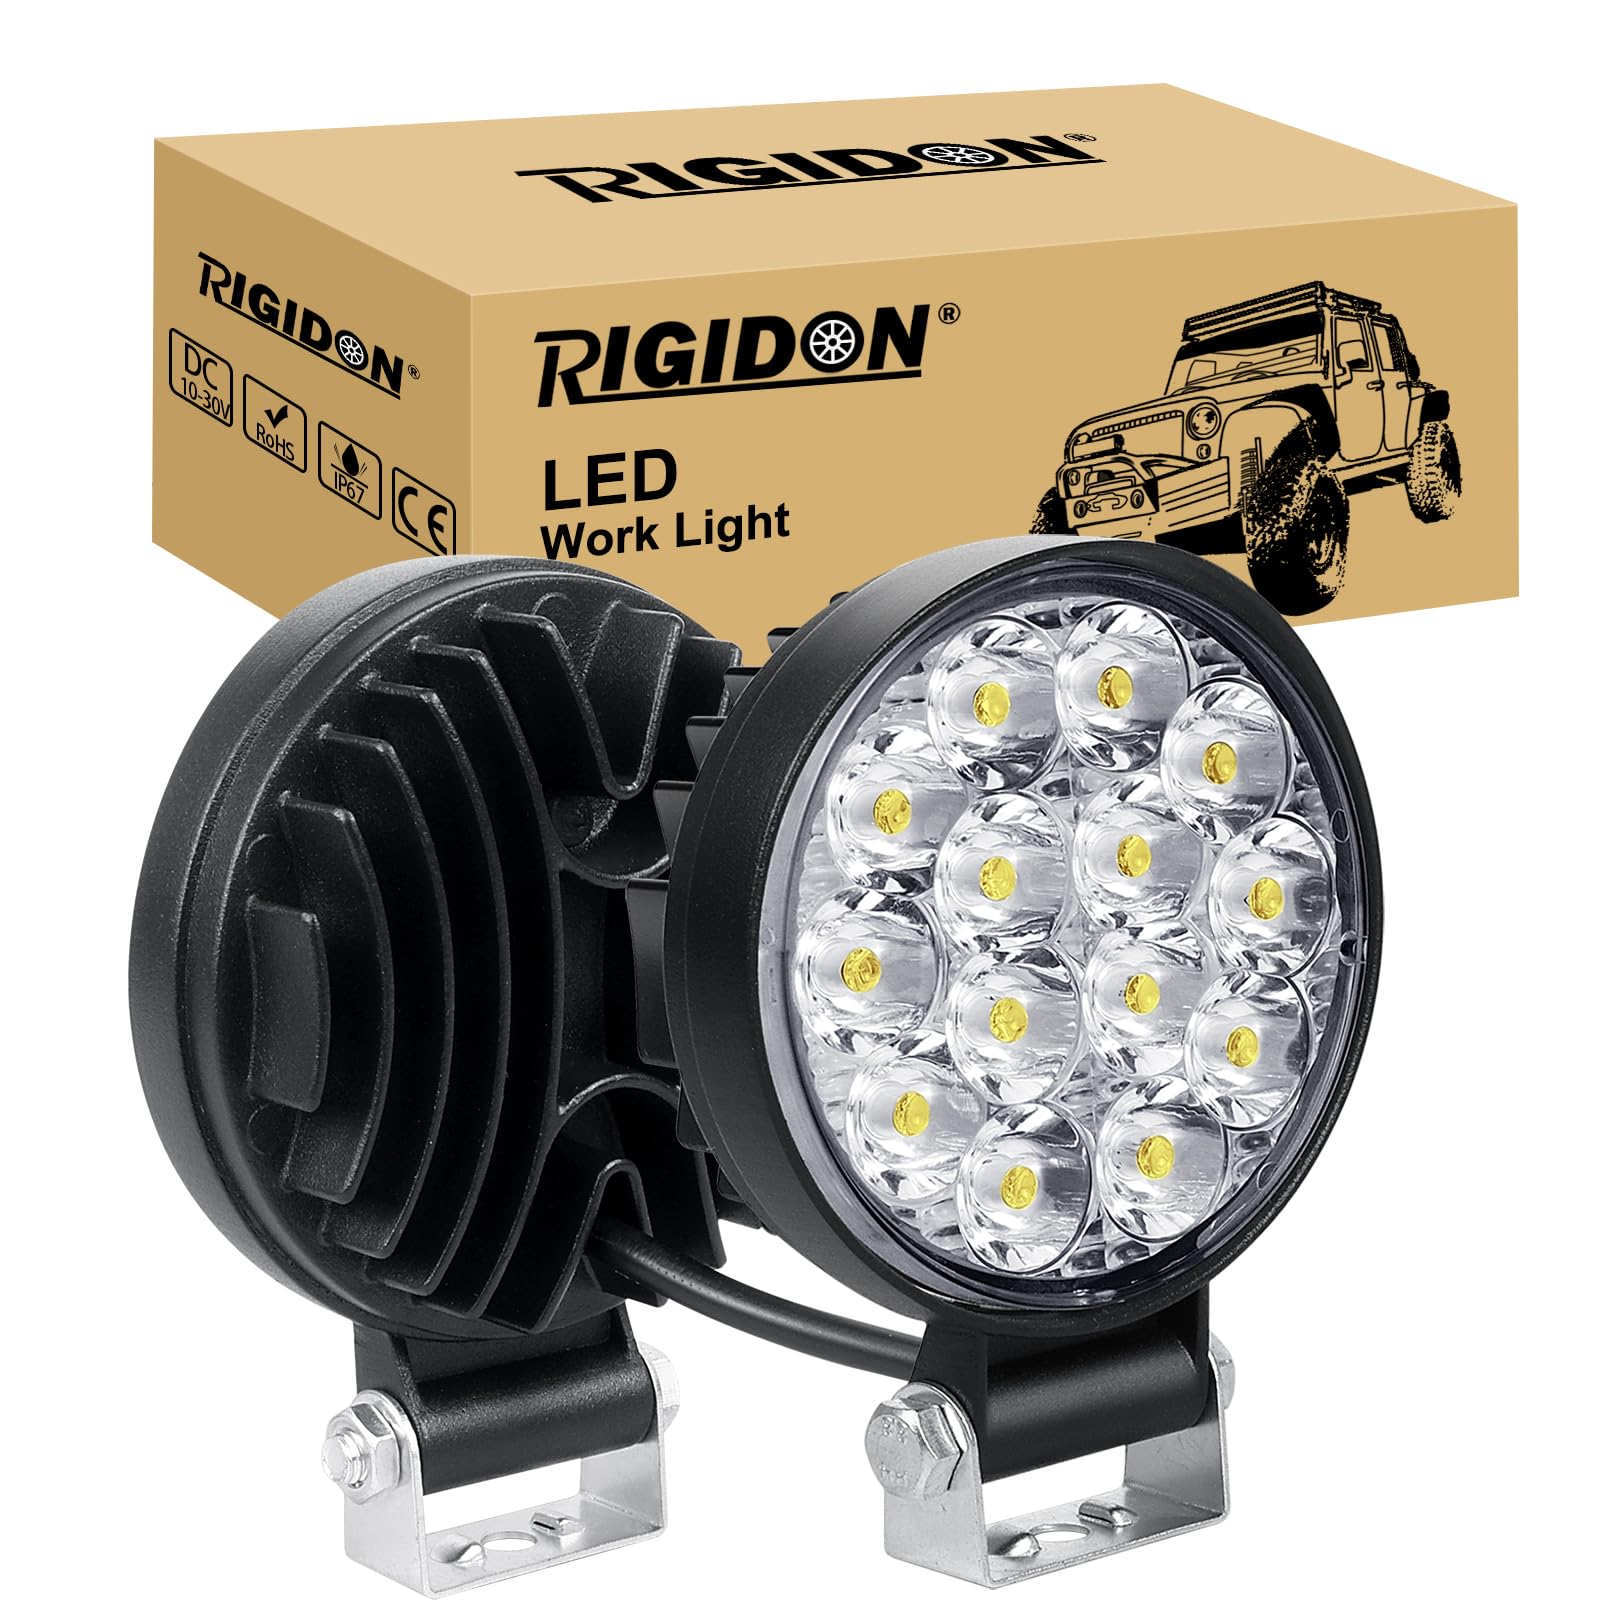 RIGIDON 2 Pcs Auto rund scheinwerfer, 3.2 Zoll mini 42W Spot Strahler offroad beleuchtung für SUV ATV Traktor LKW 4x4, 6000K Weiß led nebelscheinwerfer, led arbeitsscheinwerfer, led arbeitslicht von RIGIDON